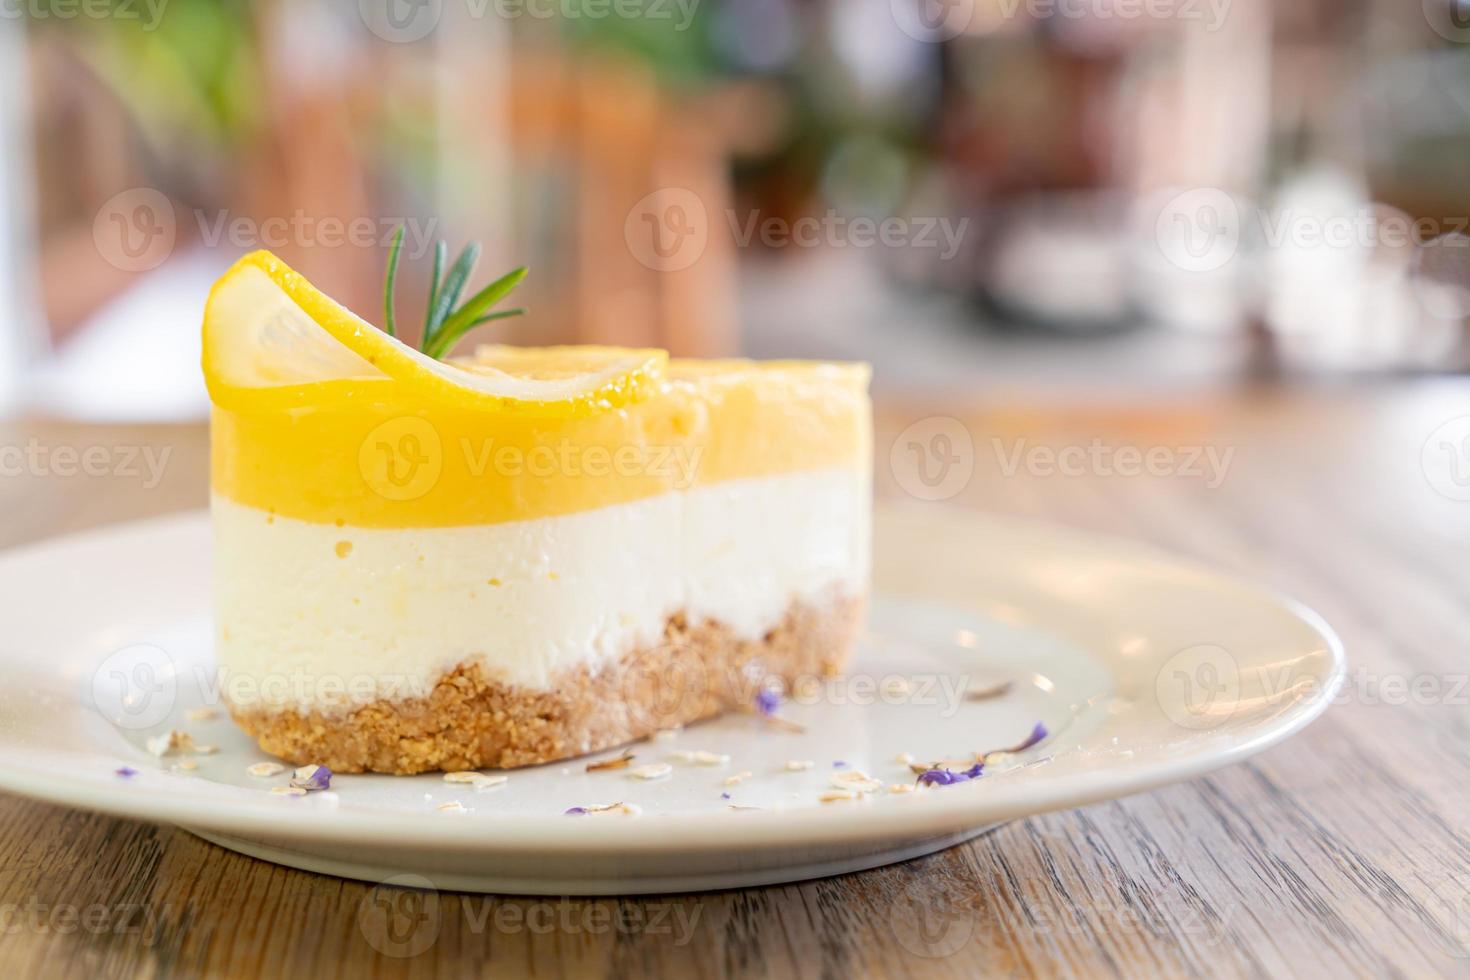 citroenkaastaart op bord in café en restaurant foto